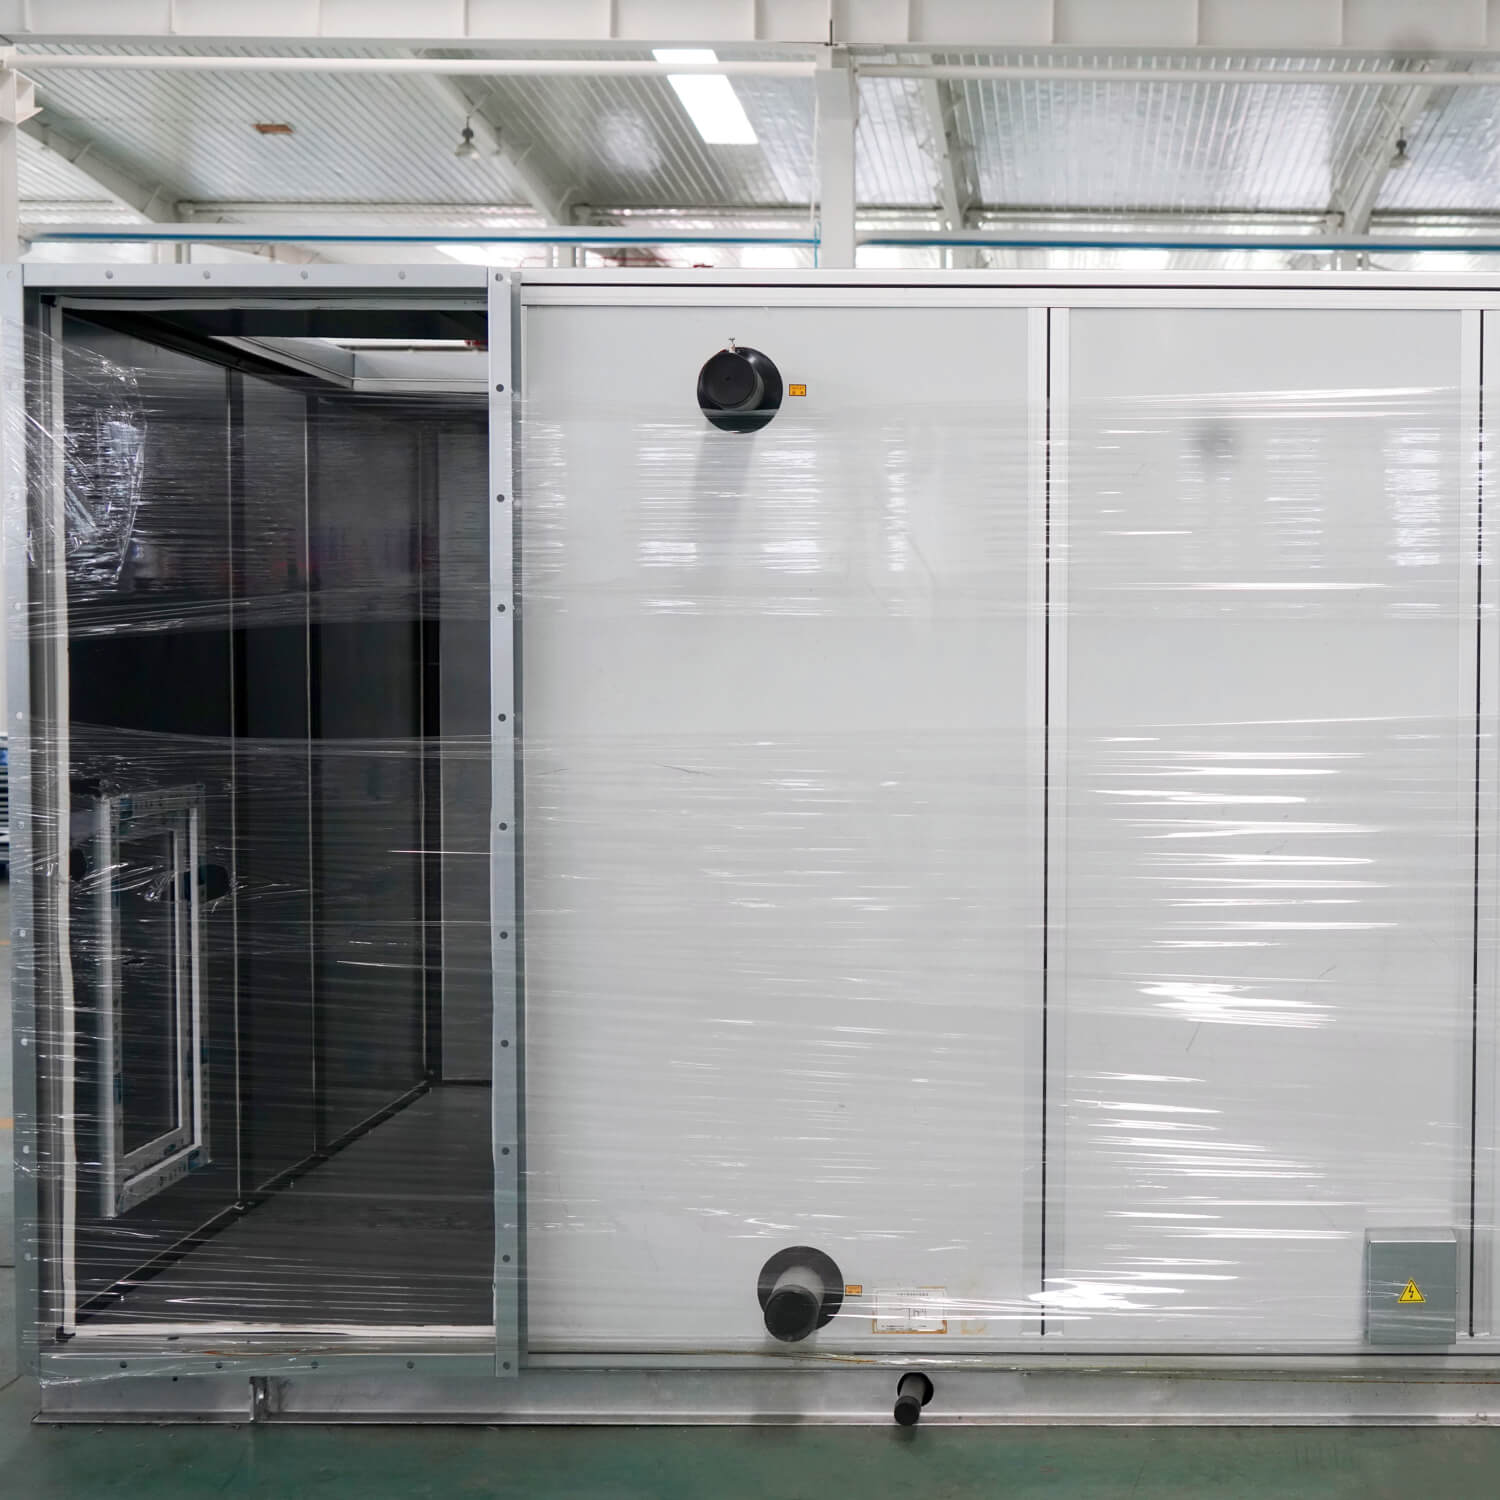 تصنيع نظام التدفئة والتهوية وتكييف الهواء (HVAC) وحدة مناولة الهواء المدمجة